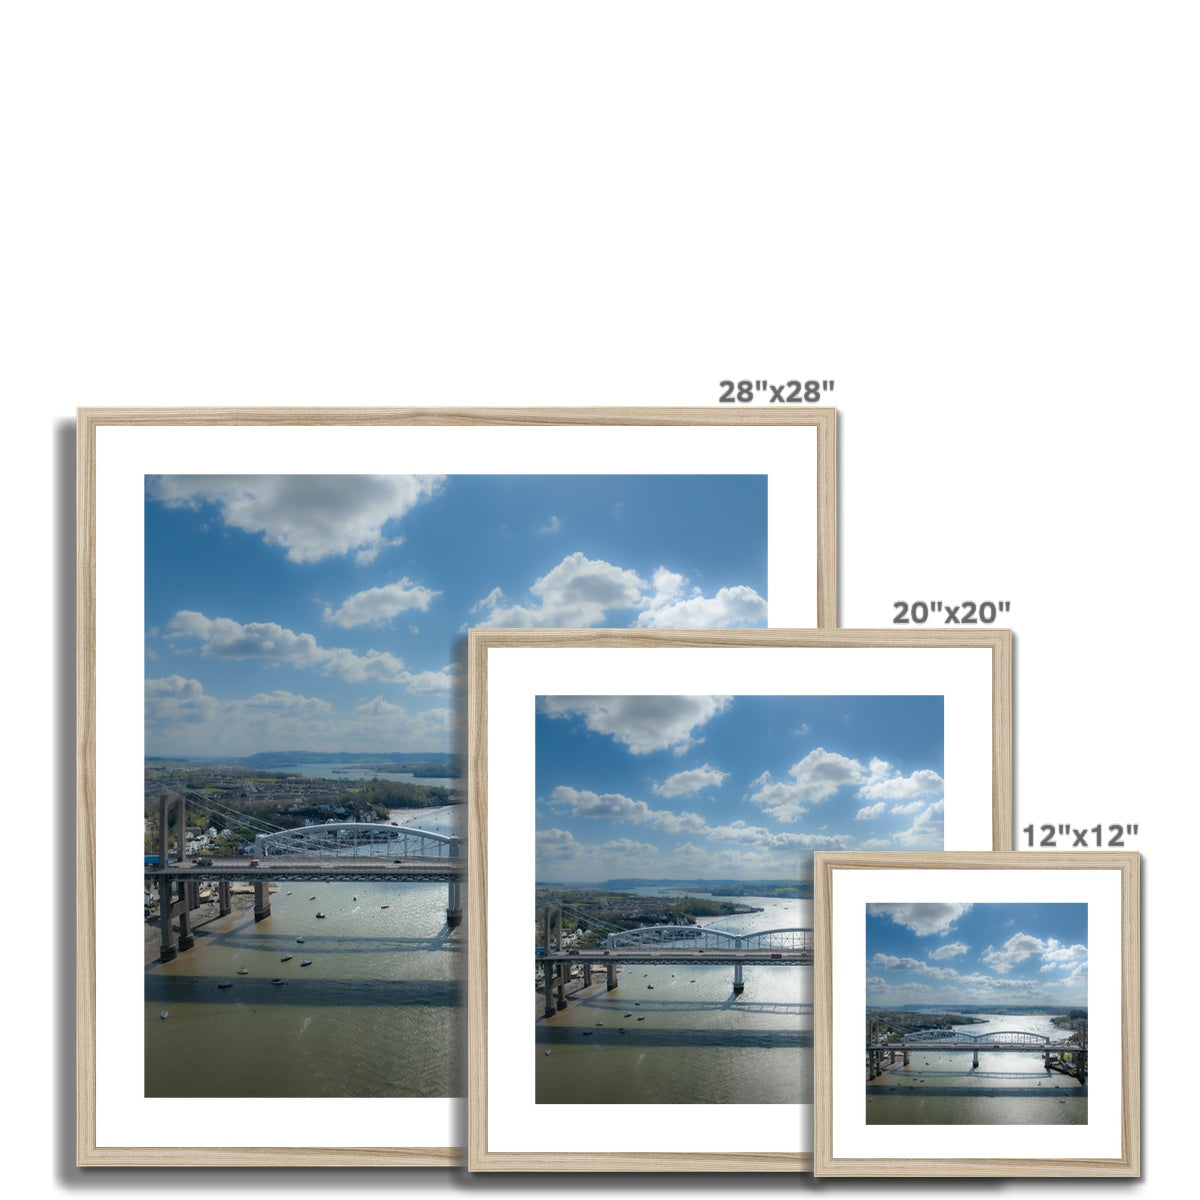 Tamar Bridge ~ Framed & Mounted Print